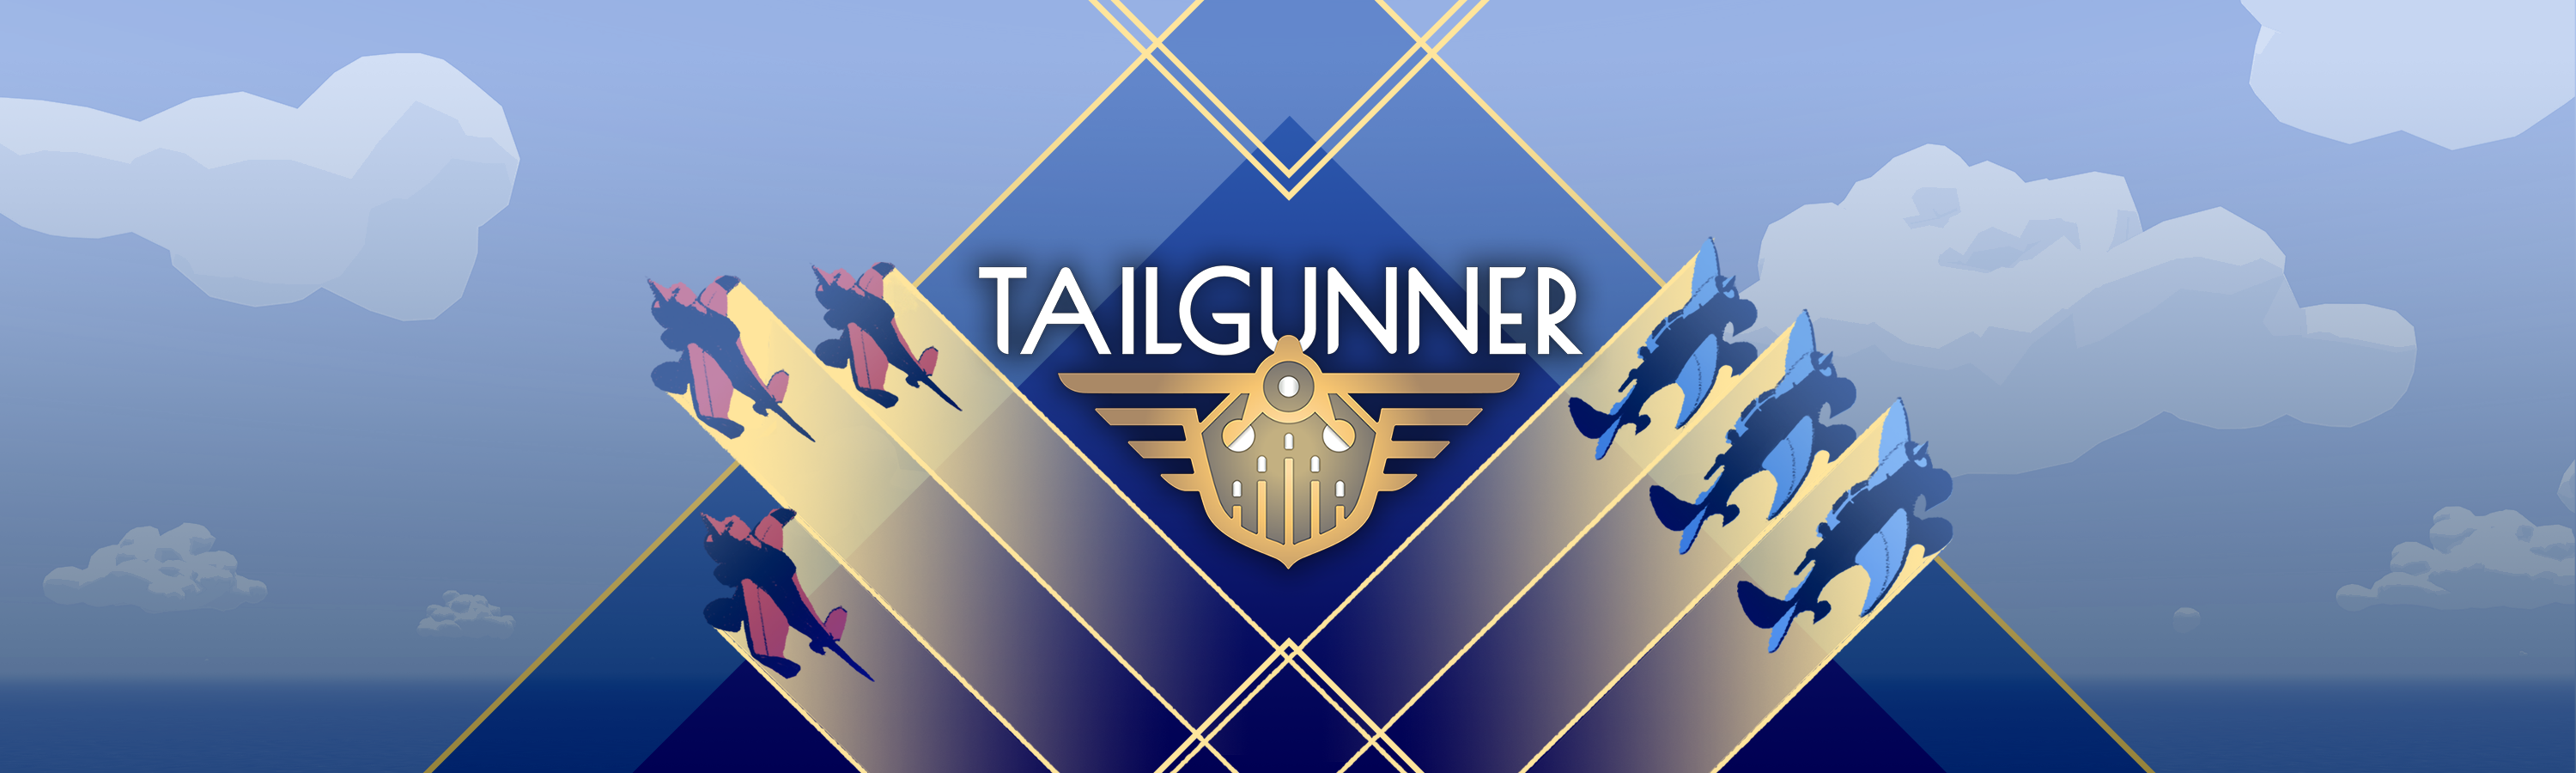 Tailgunner